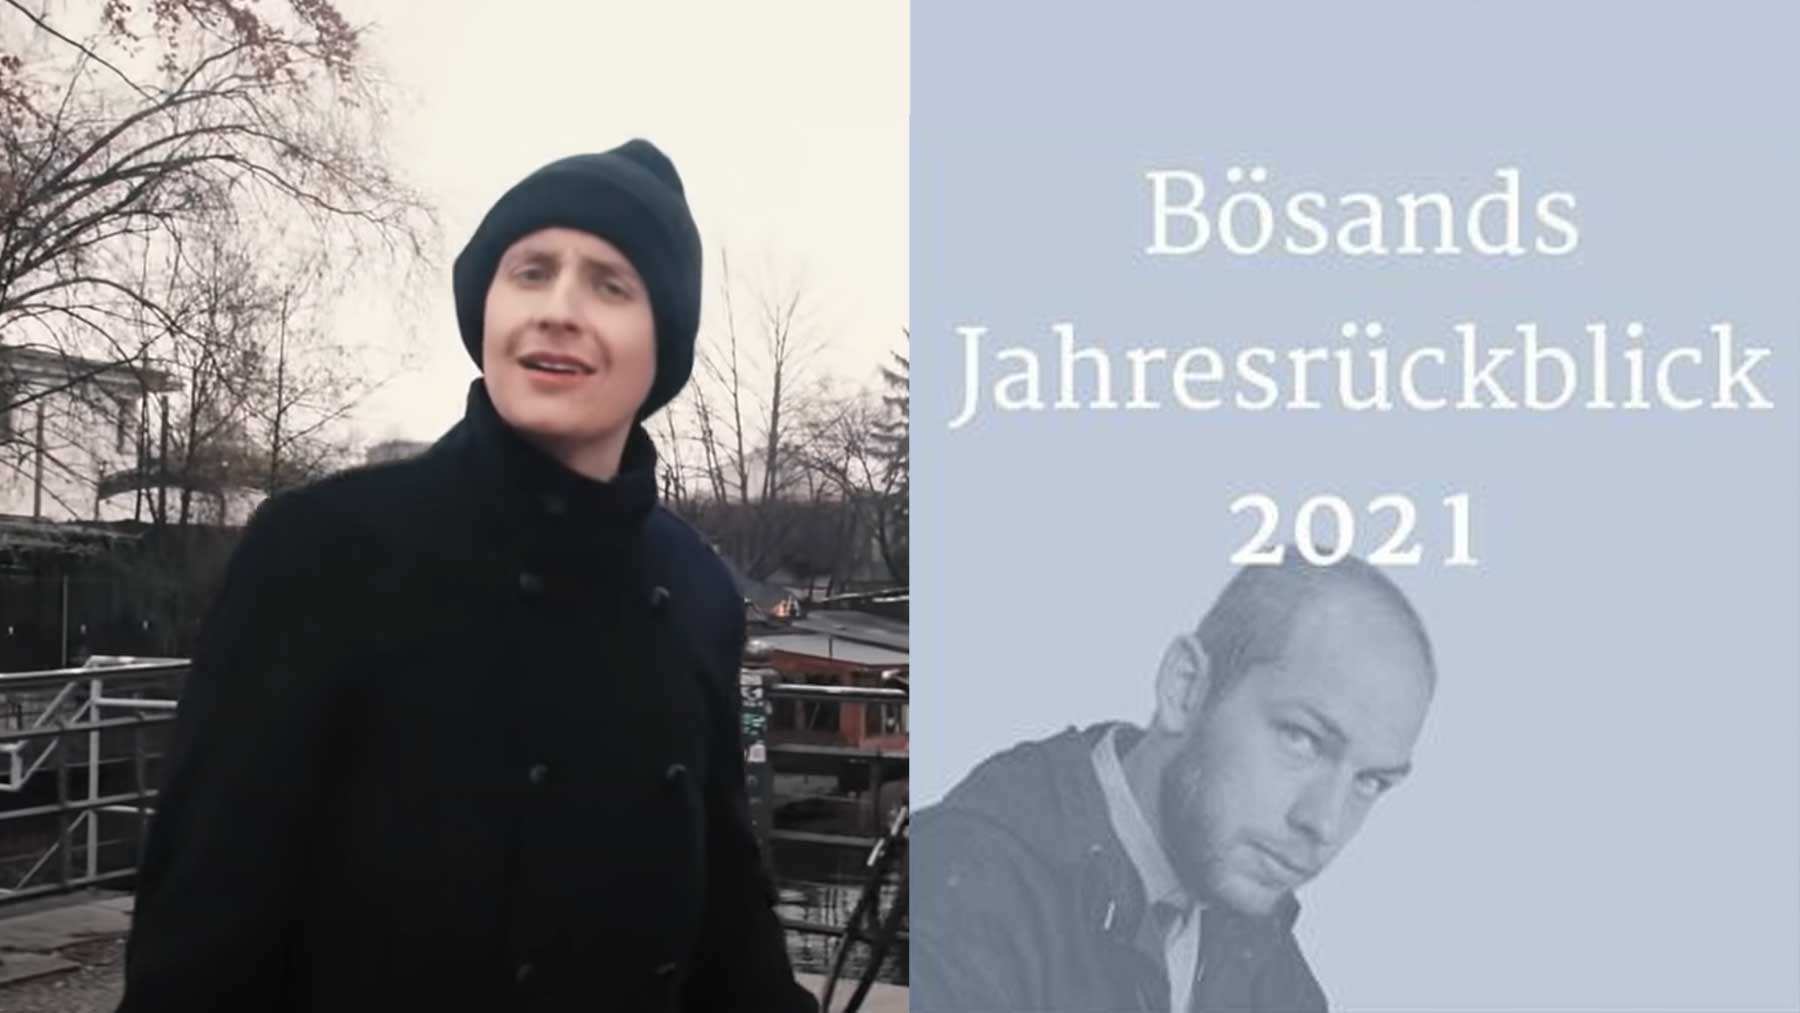 2021: Jahresrückblicke von Till Reiners & Philip Bösand